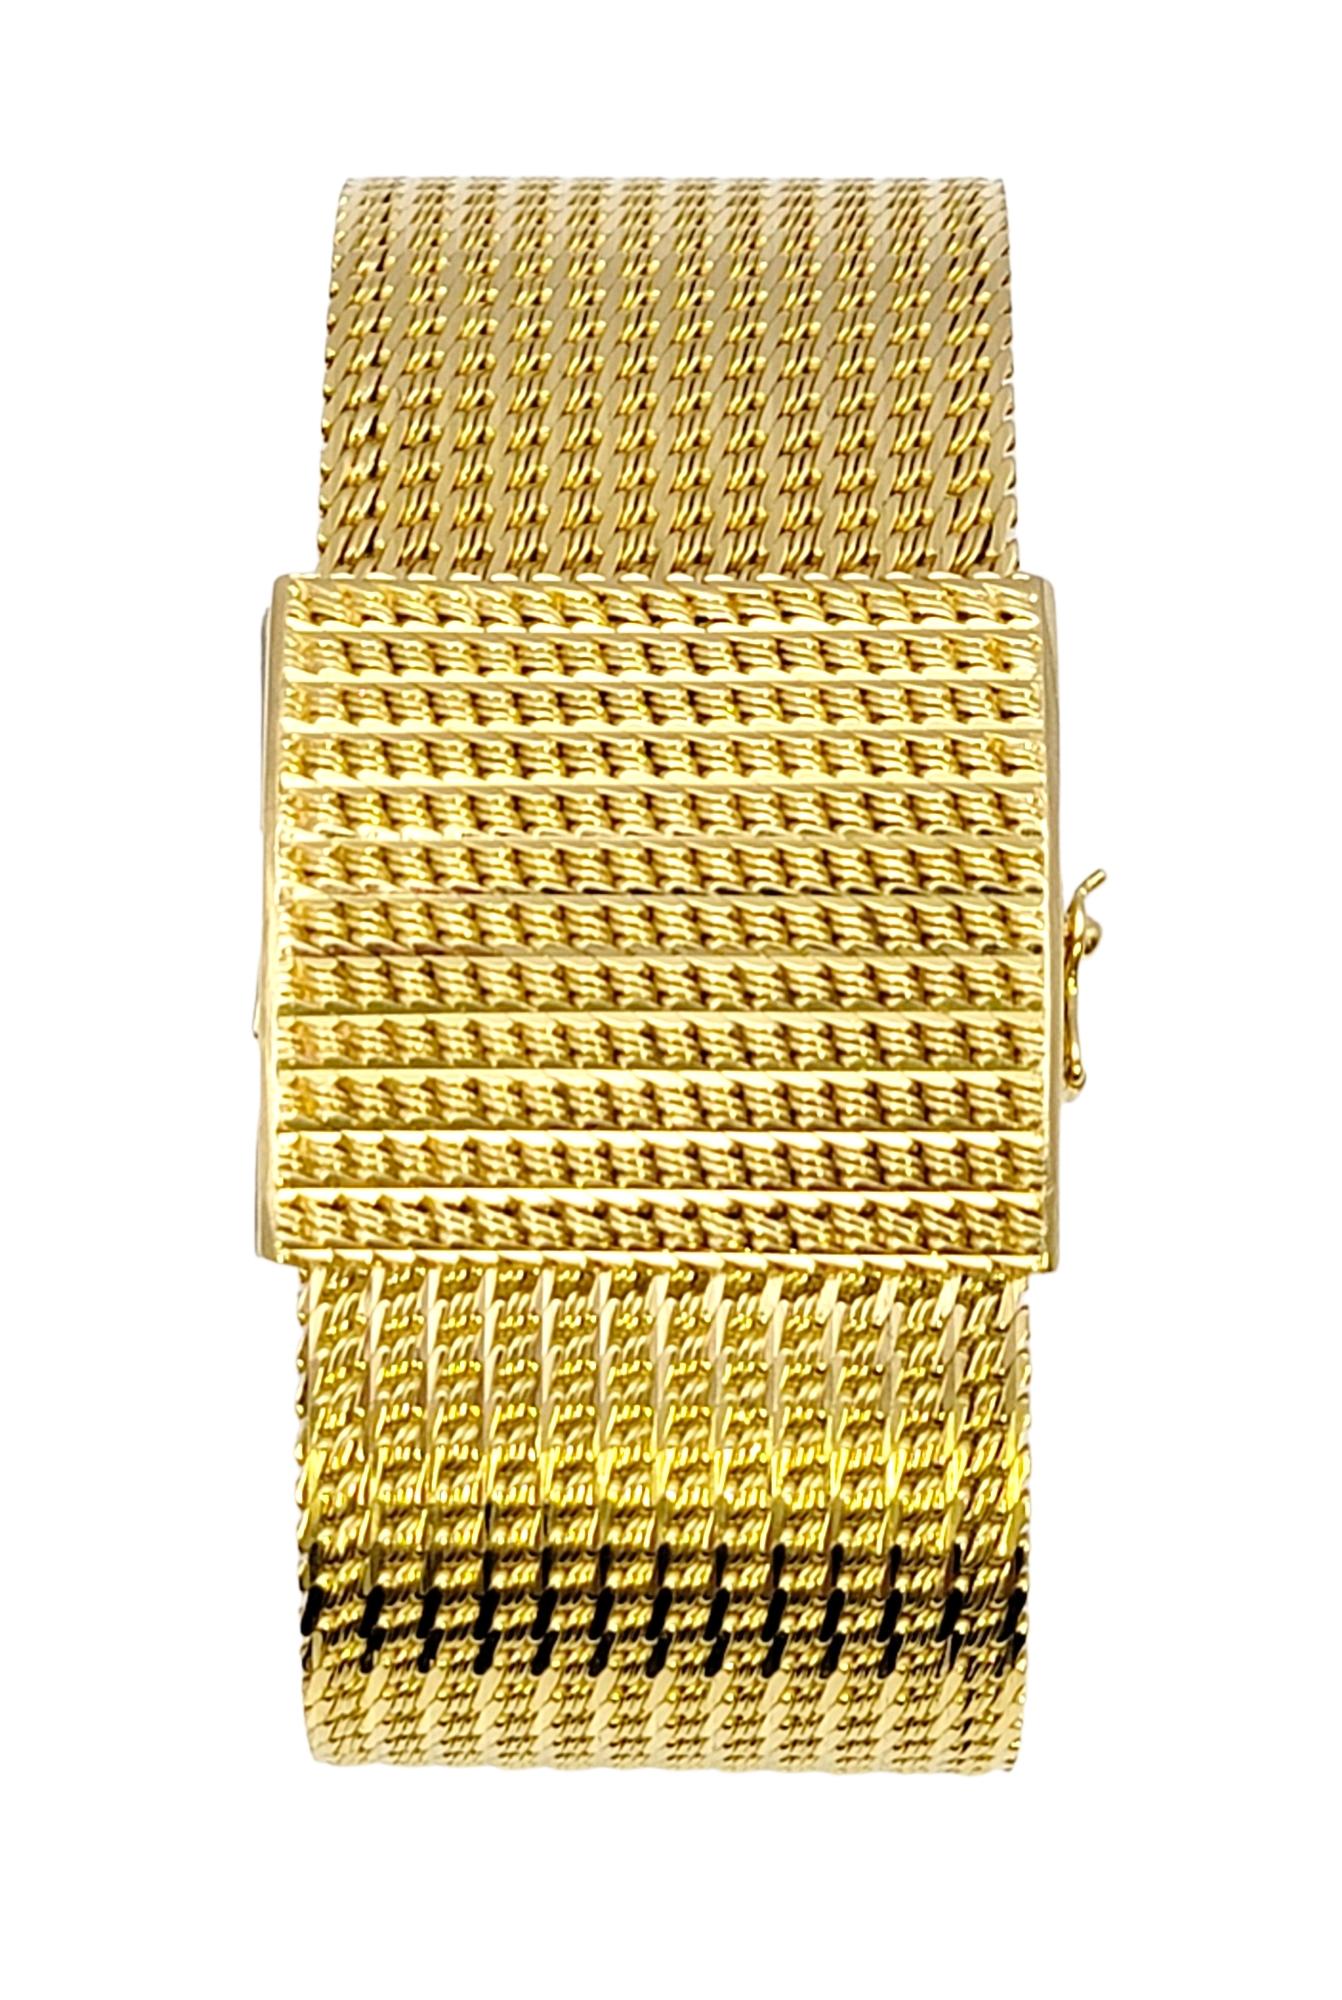 Breites Mesh-Armband aus strukturiertem 18 Karat Gelbgold mit großem quadratischem Verschluss, Vintage für Damen oder Herren im Angebot